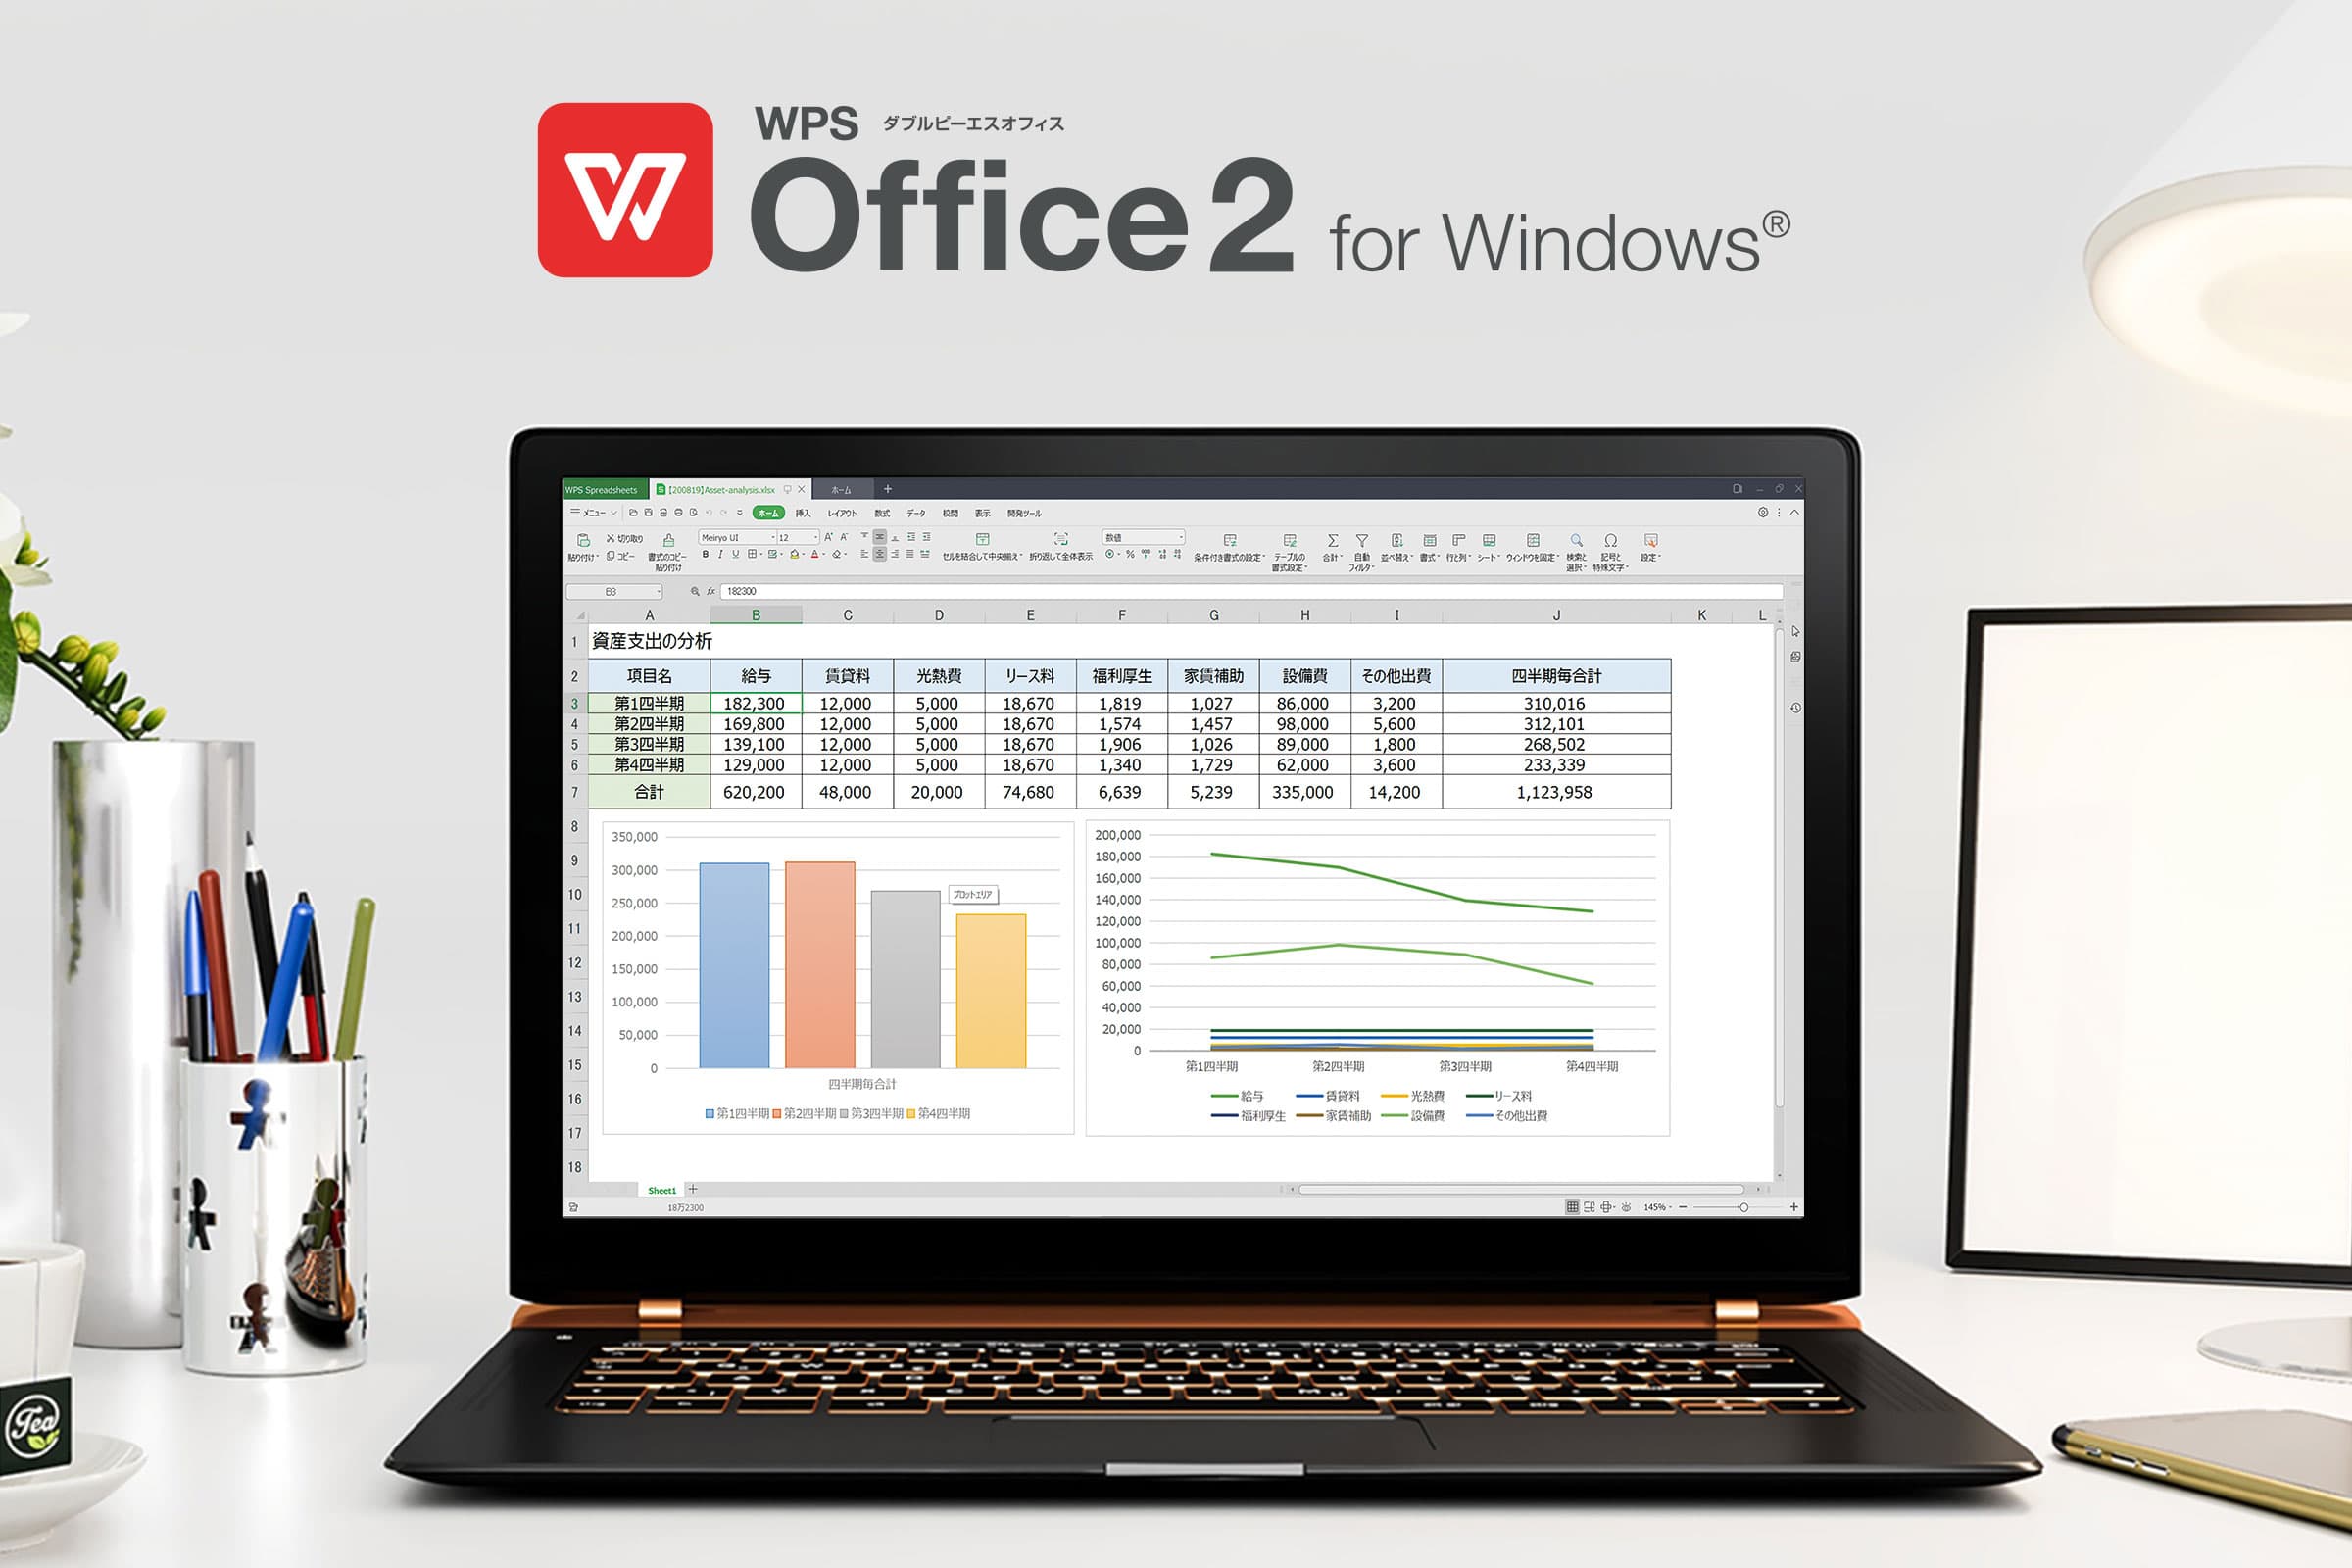 WPS Office 2 for Windows